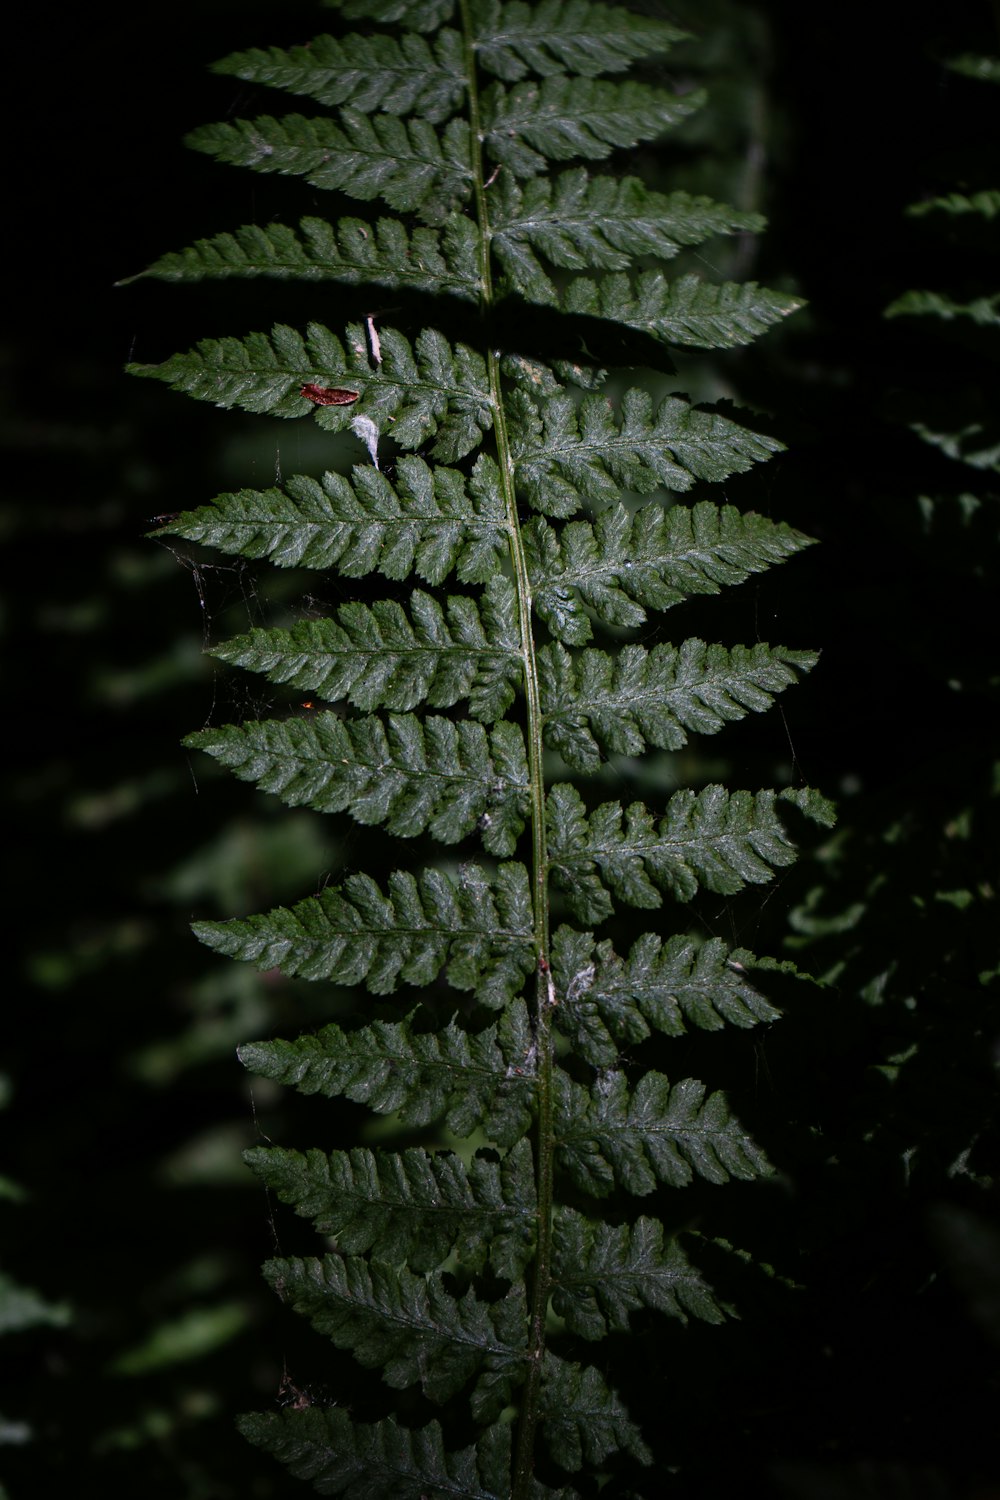 a close up of a fern leaf in the dark